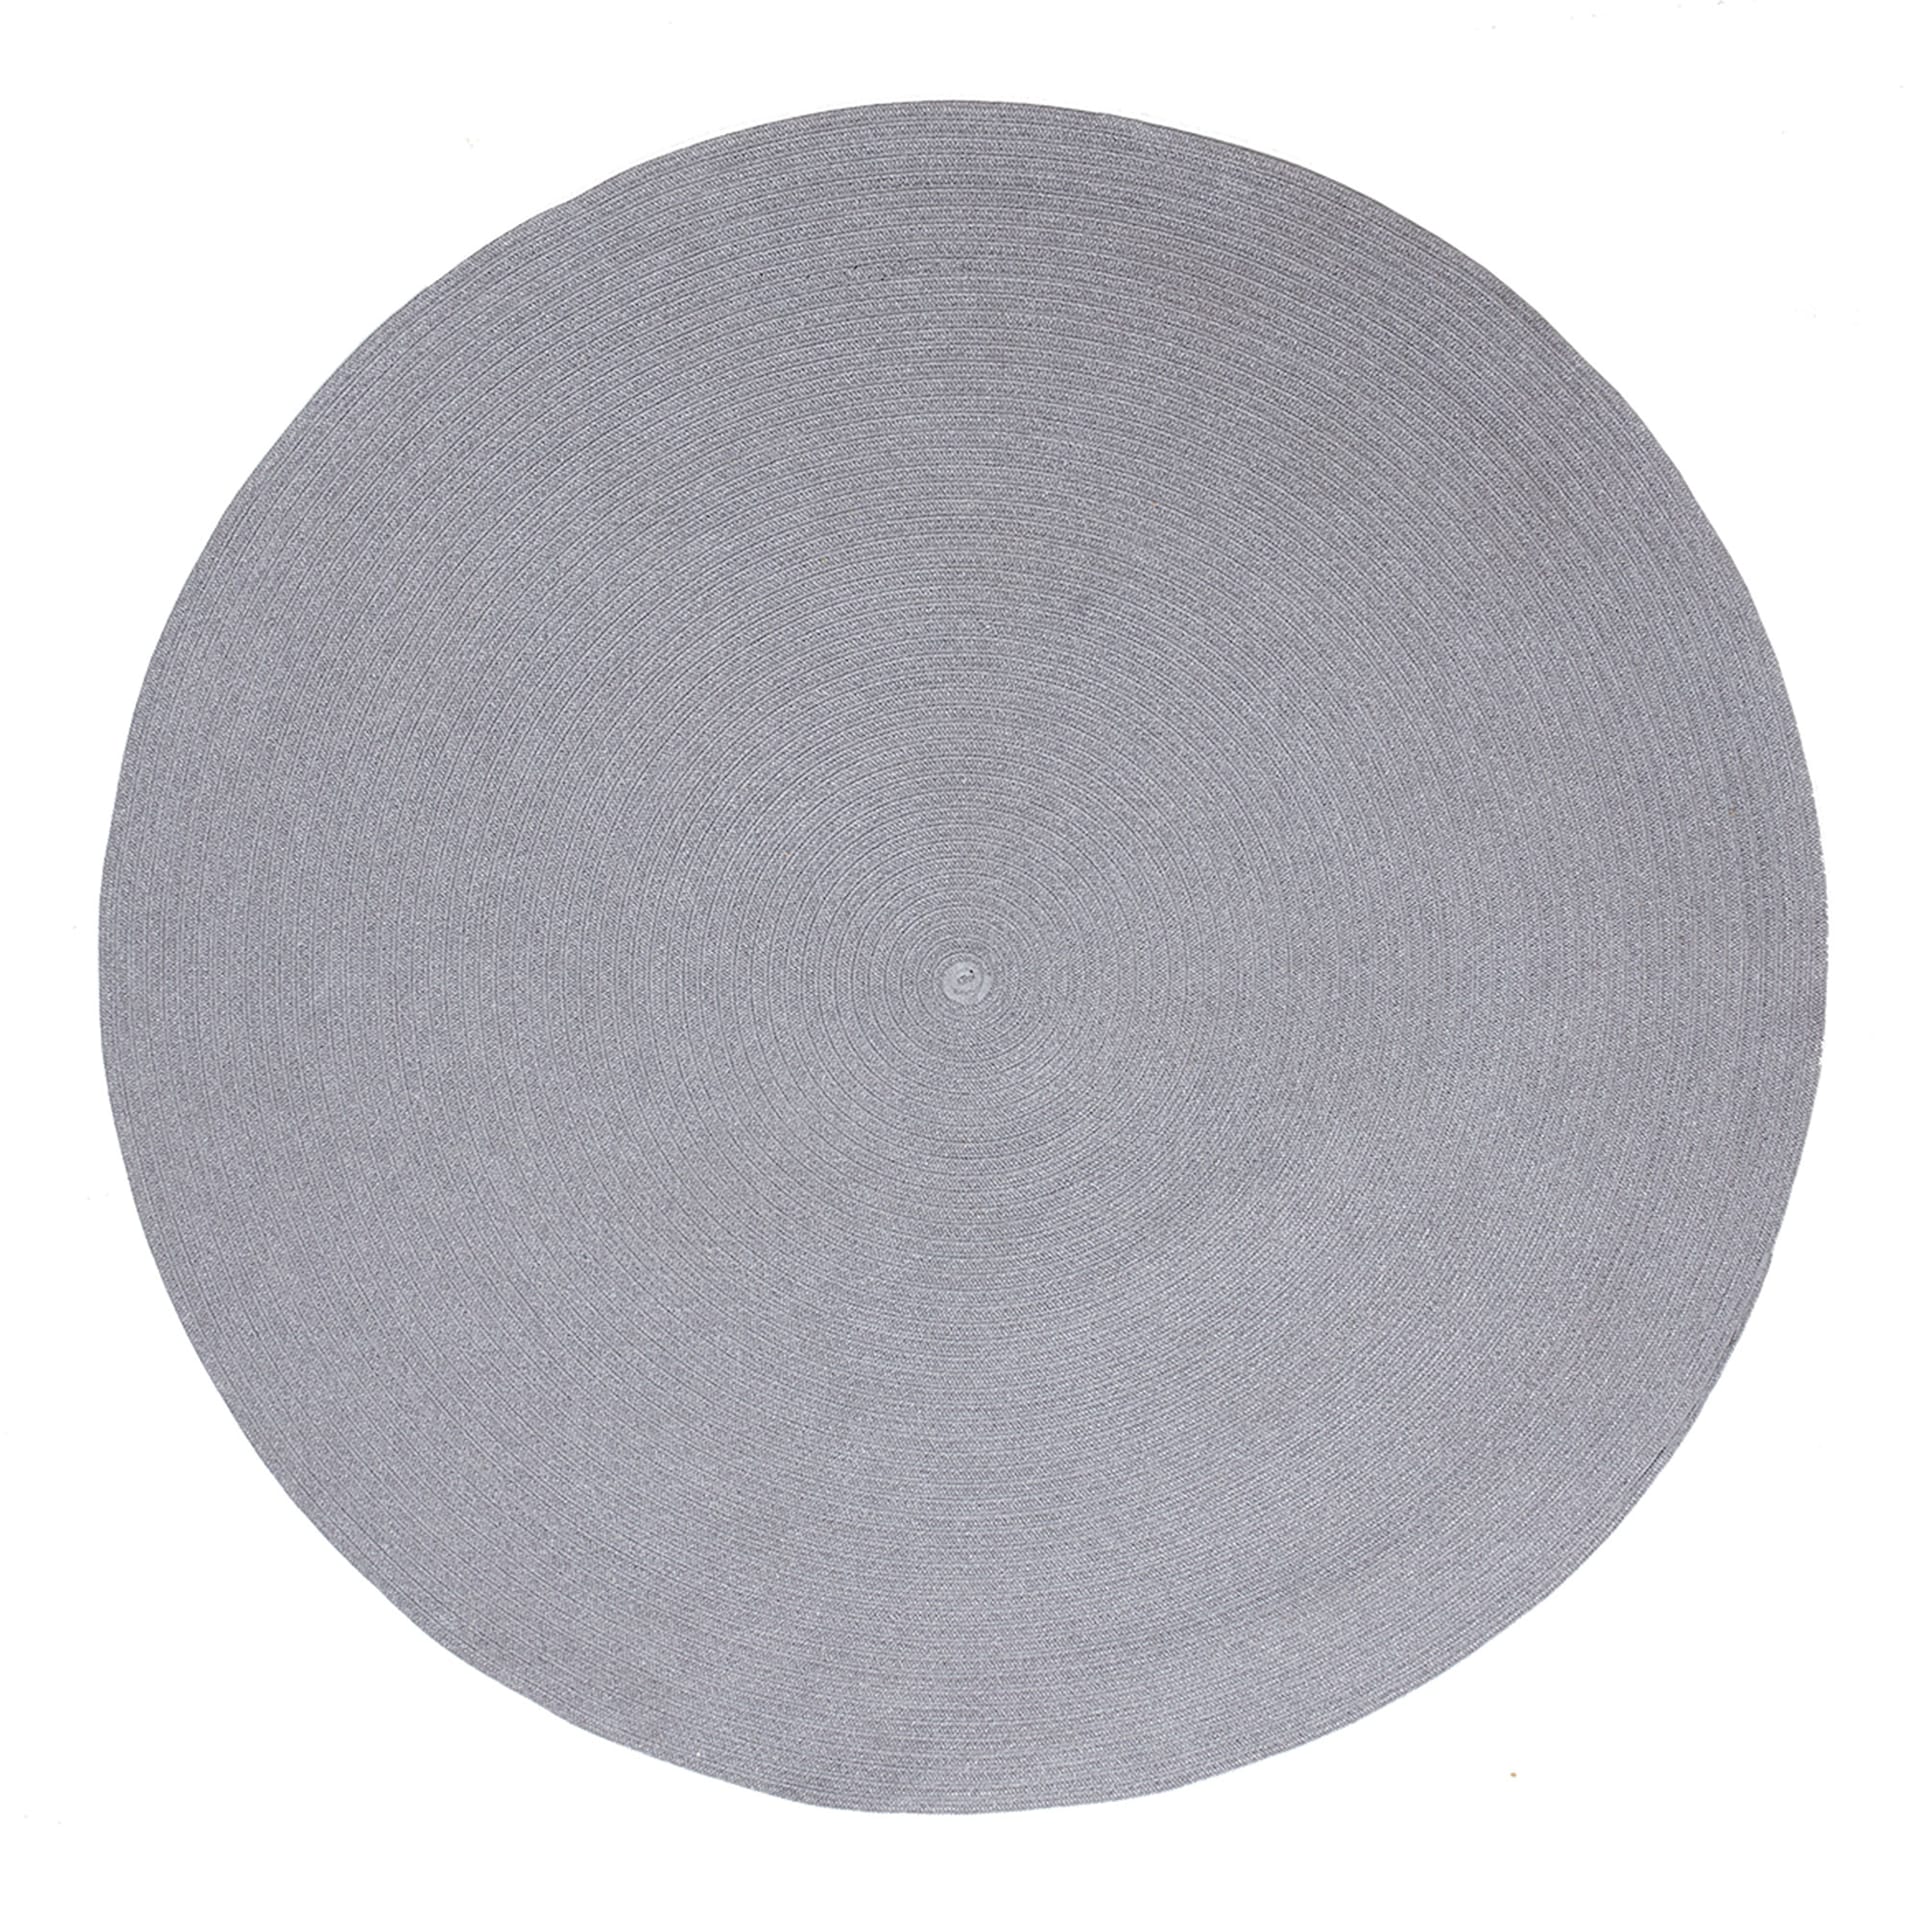 Circle 140 cm - Cane-Line - NO GA